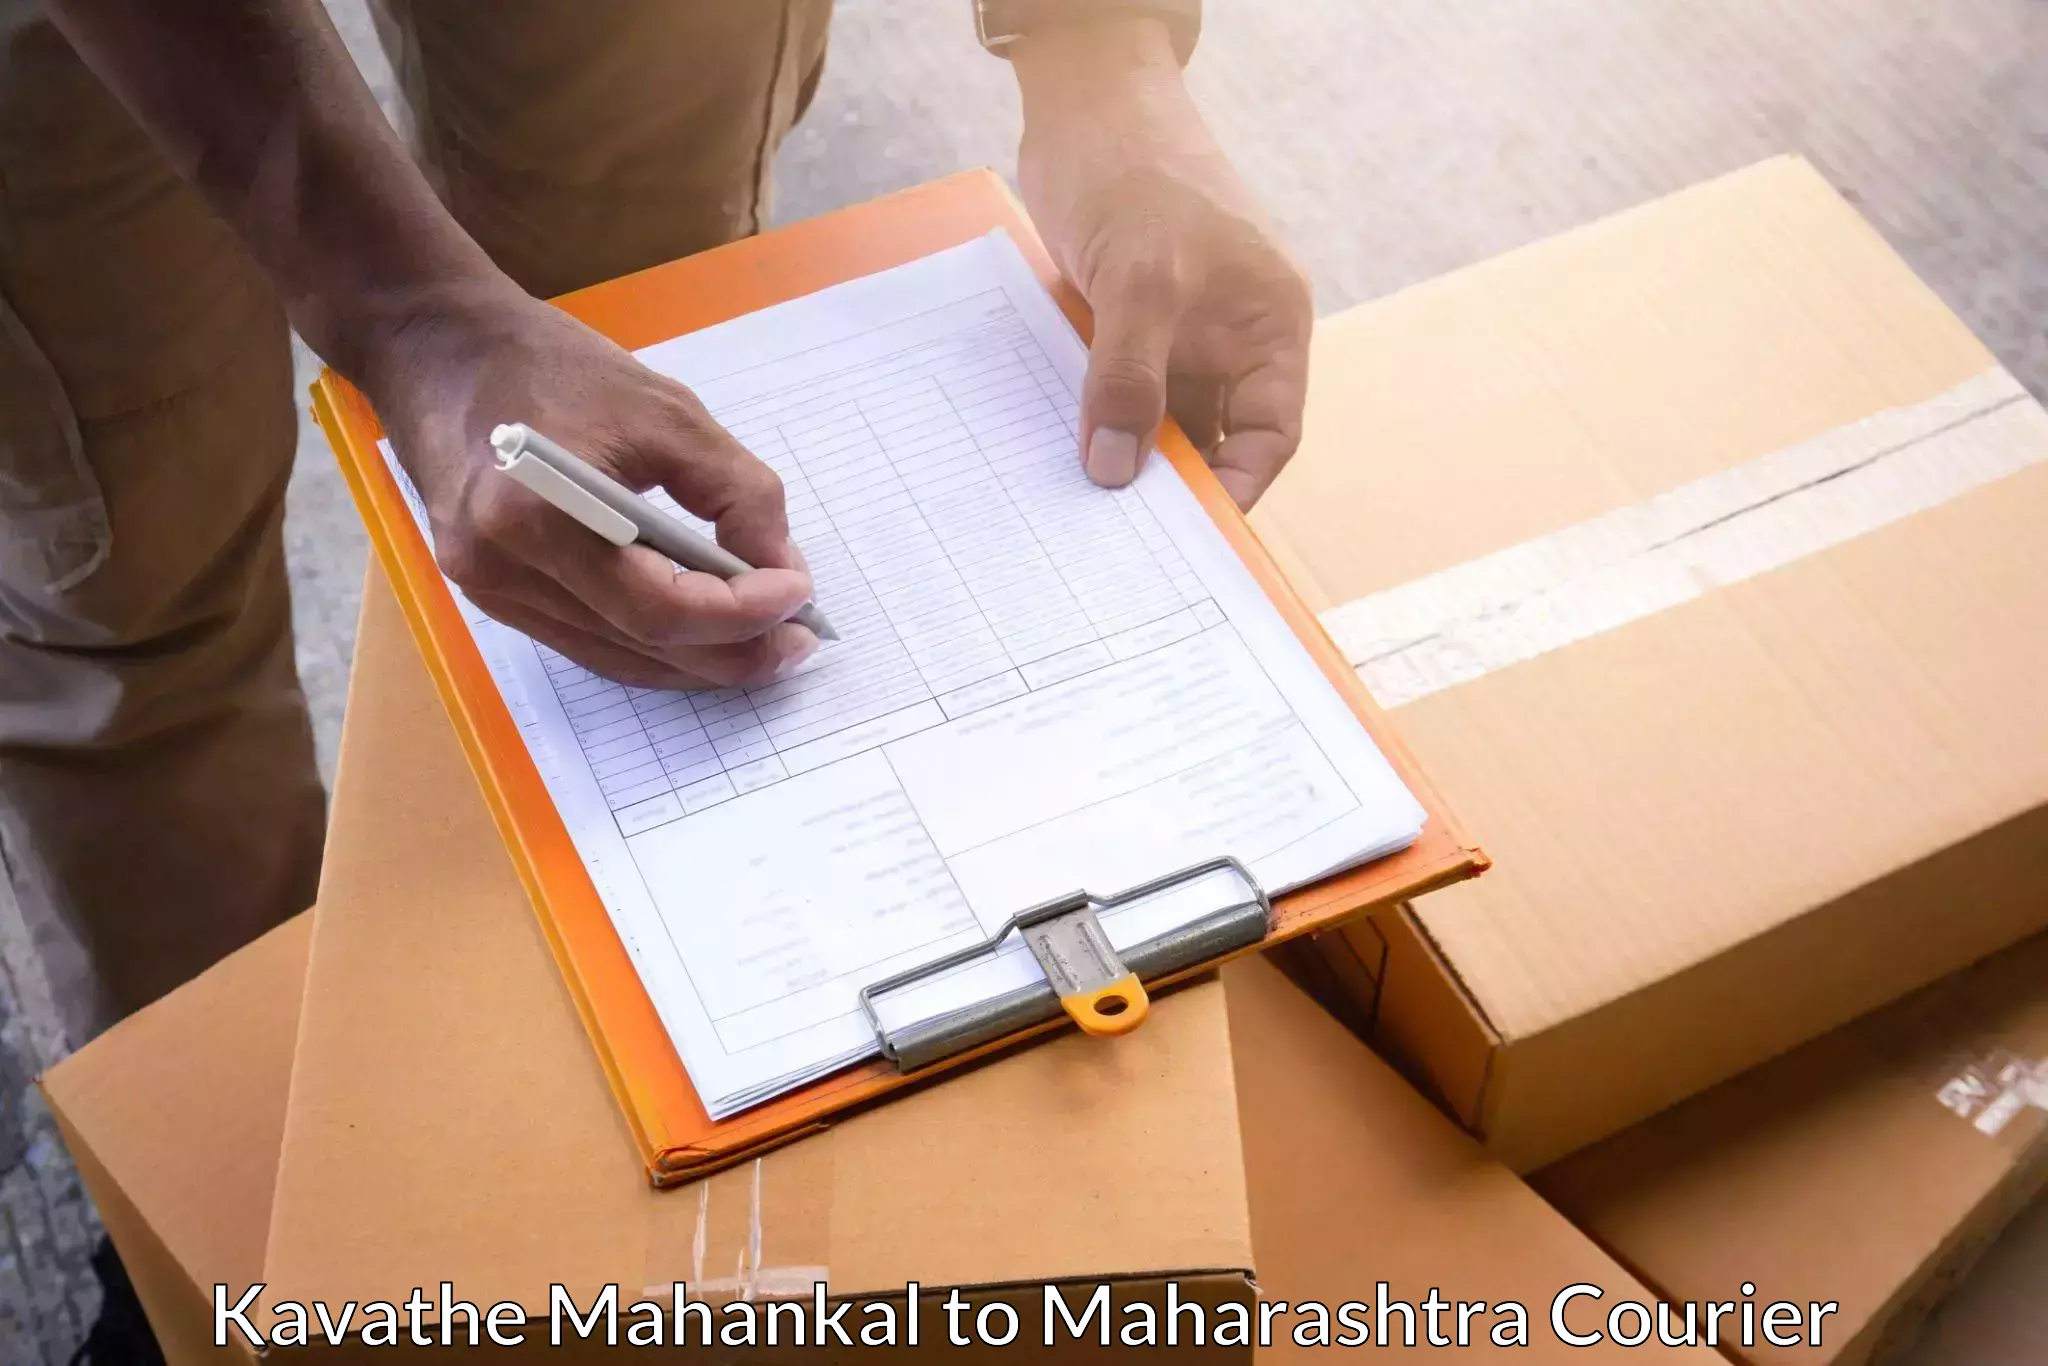 Urgent courier needs Kavathe Mahankal to Baramati